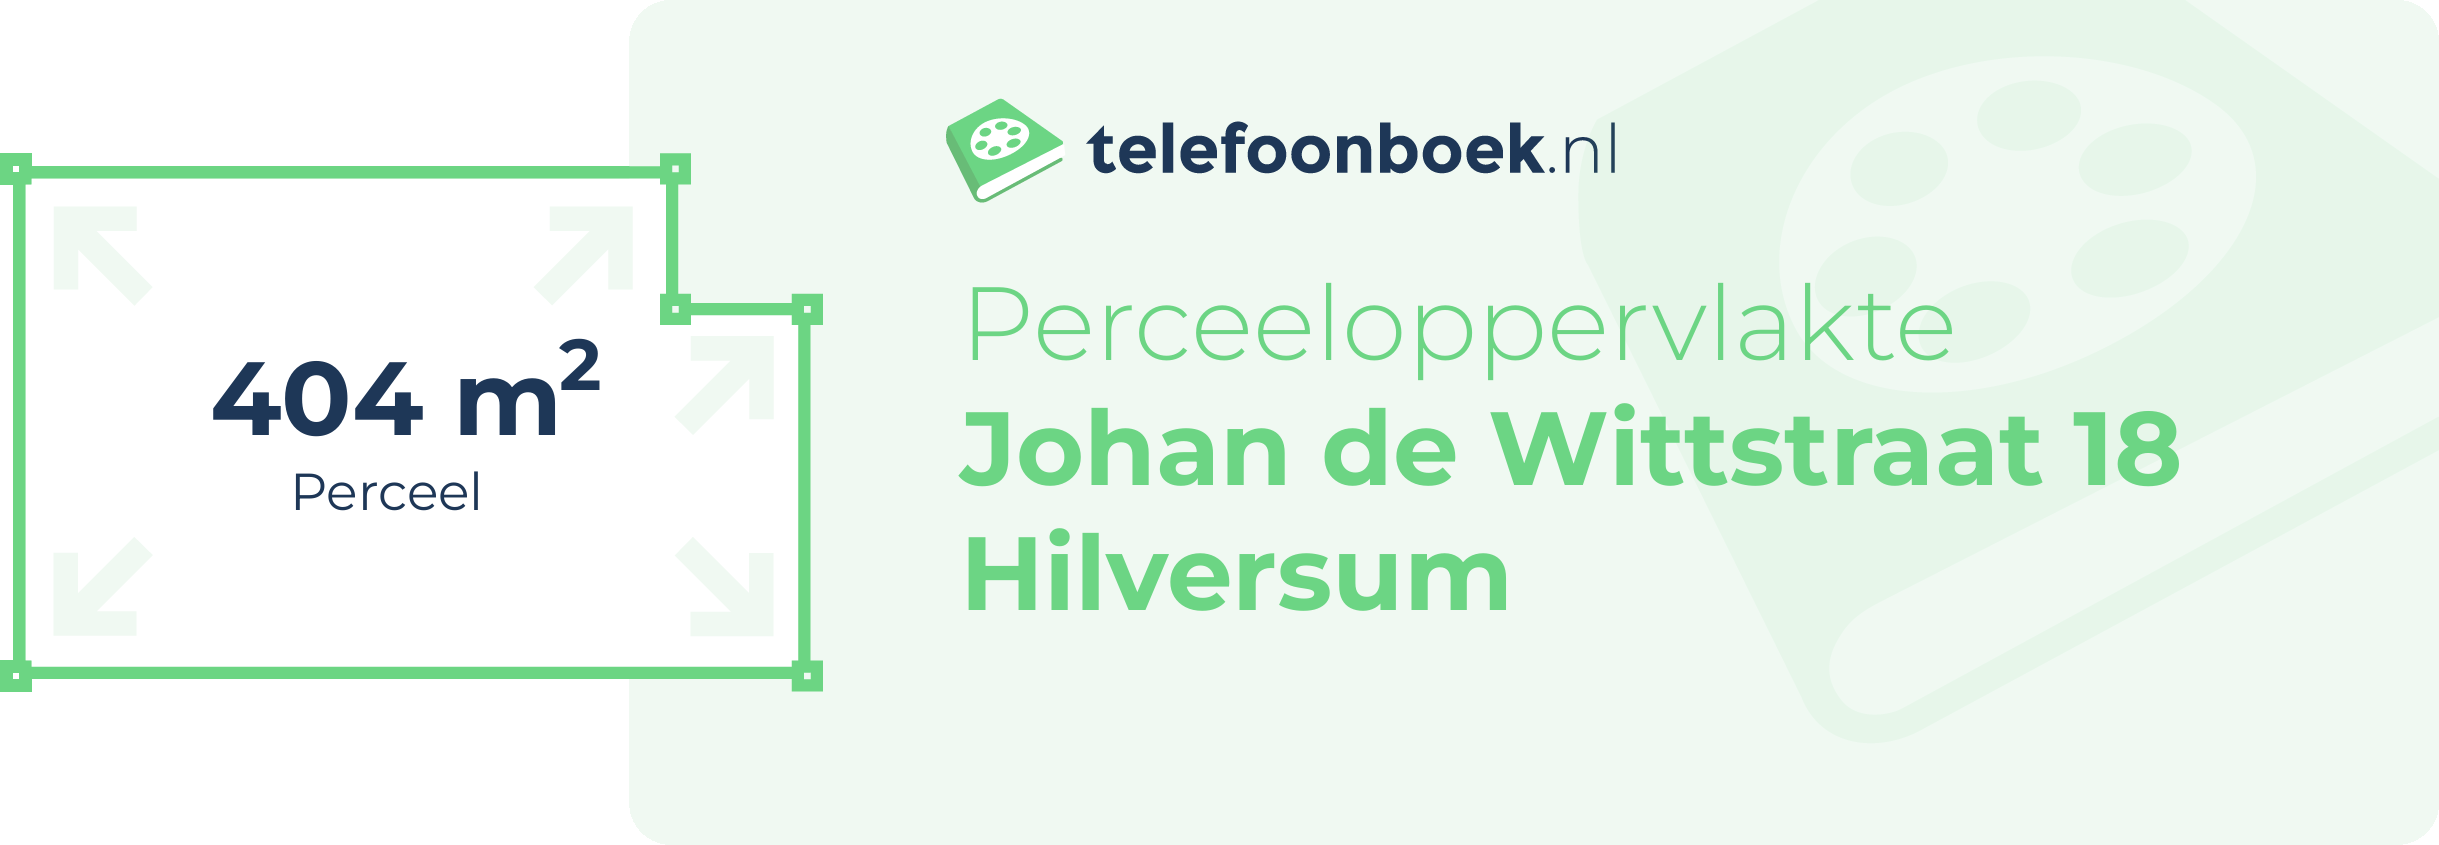 Perceeloppervlakte Johan De Wittstraat 18 Hilversum